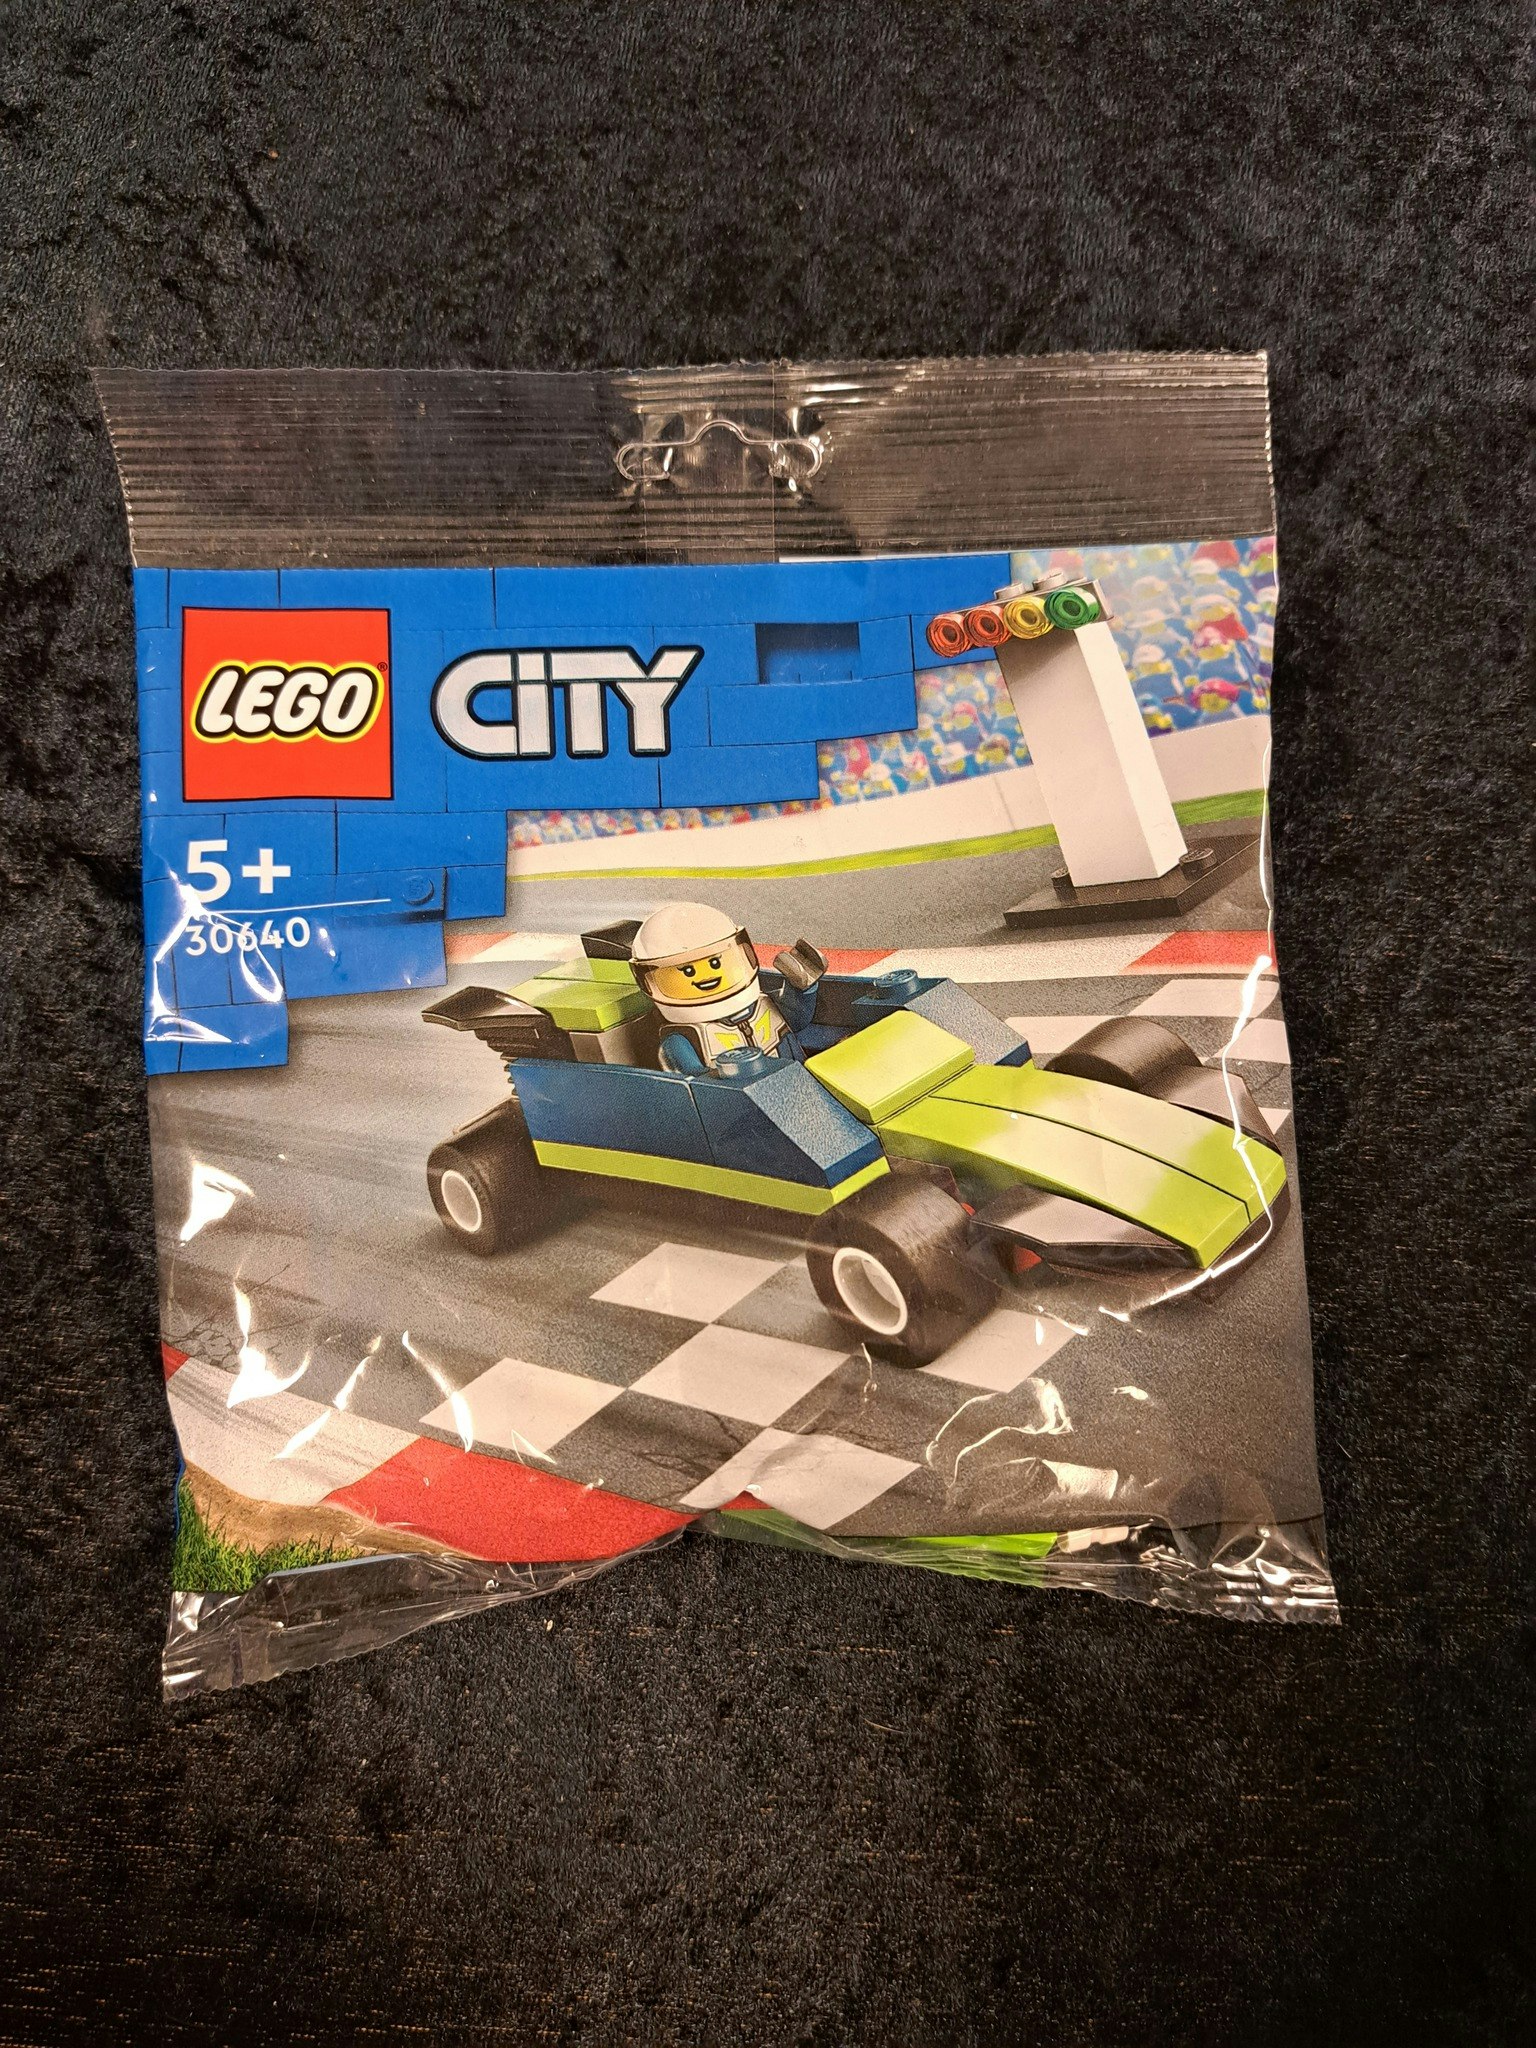 LEGO City 30640 Race Car